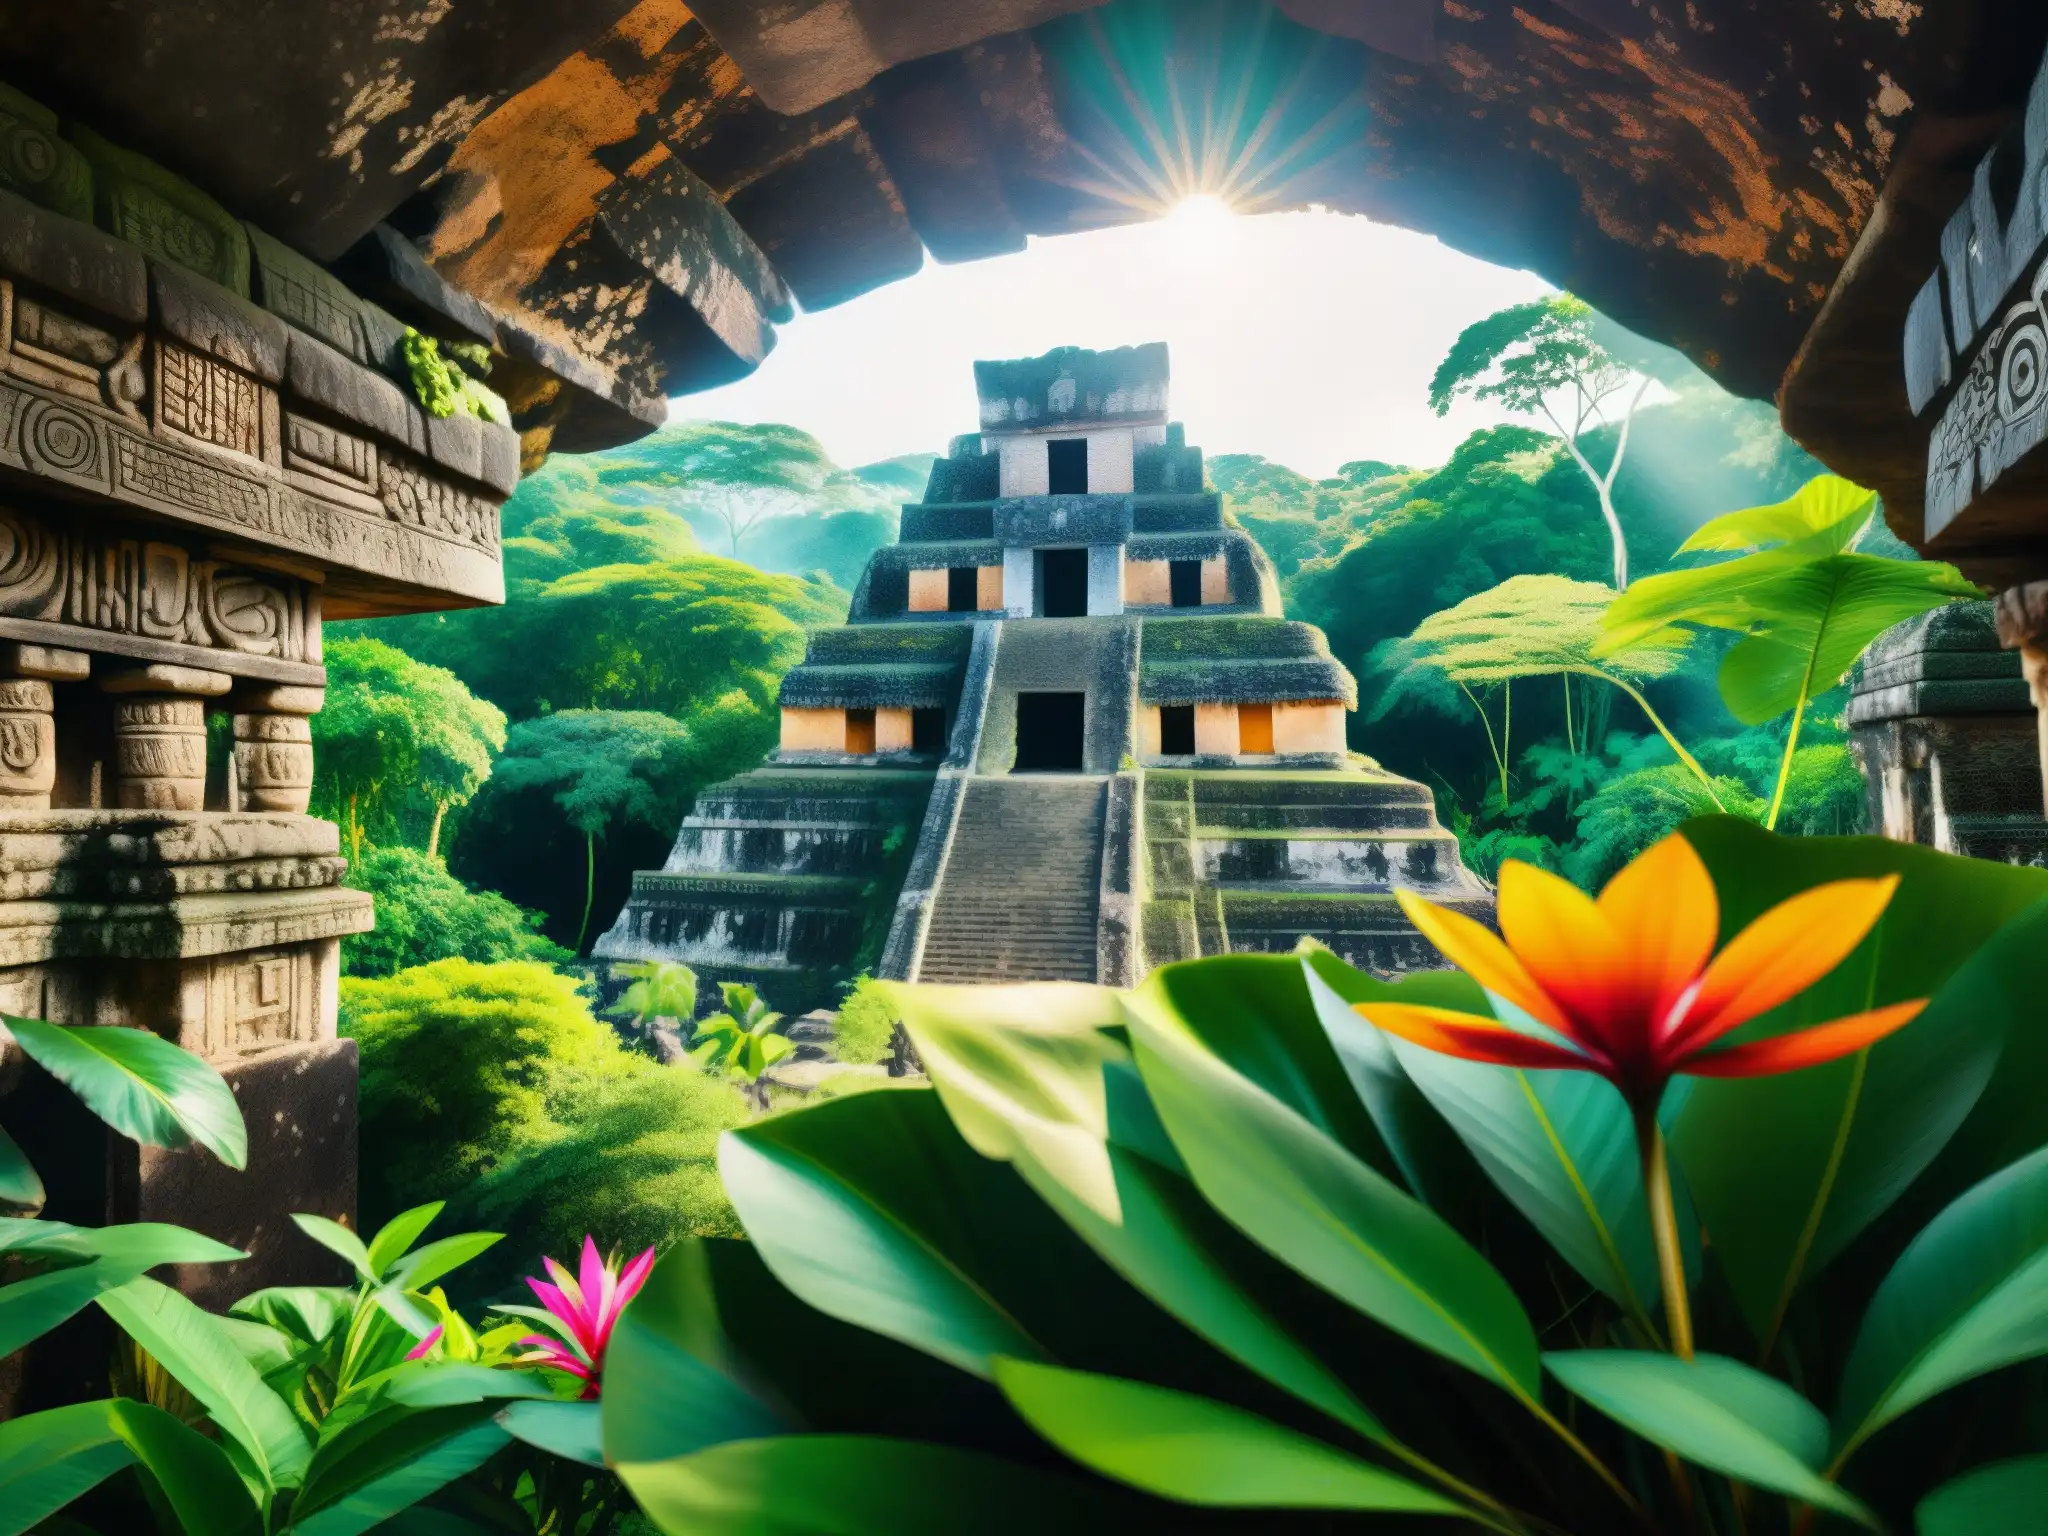 Una selva maya exuberante con ruinas antiguas, la misteriosa flor Xtabay y un templo oculto entre la niebla, evocando el misterio y la leyenda maya